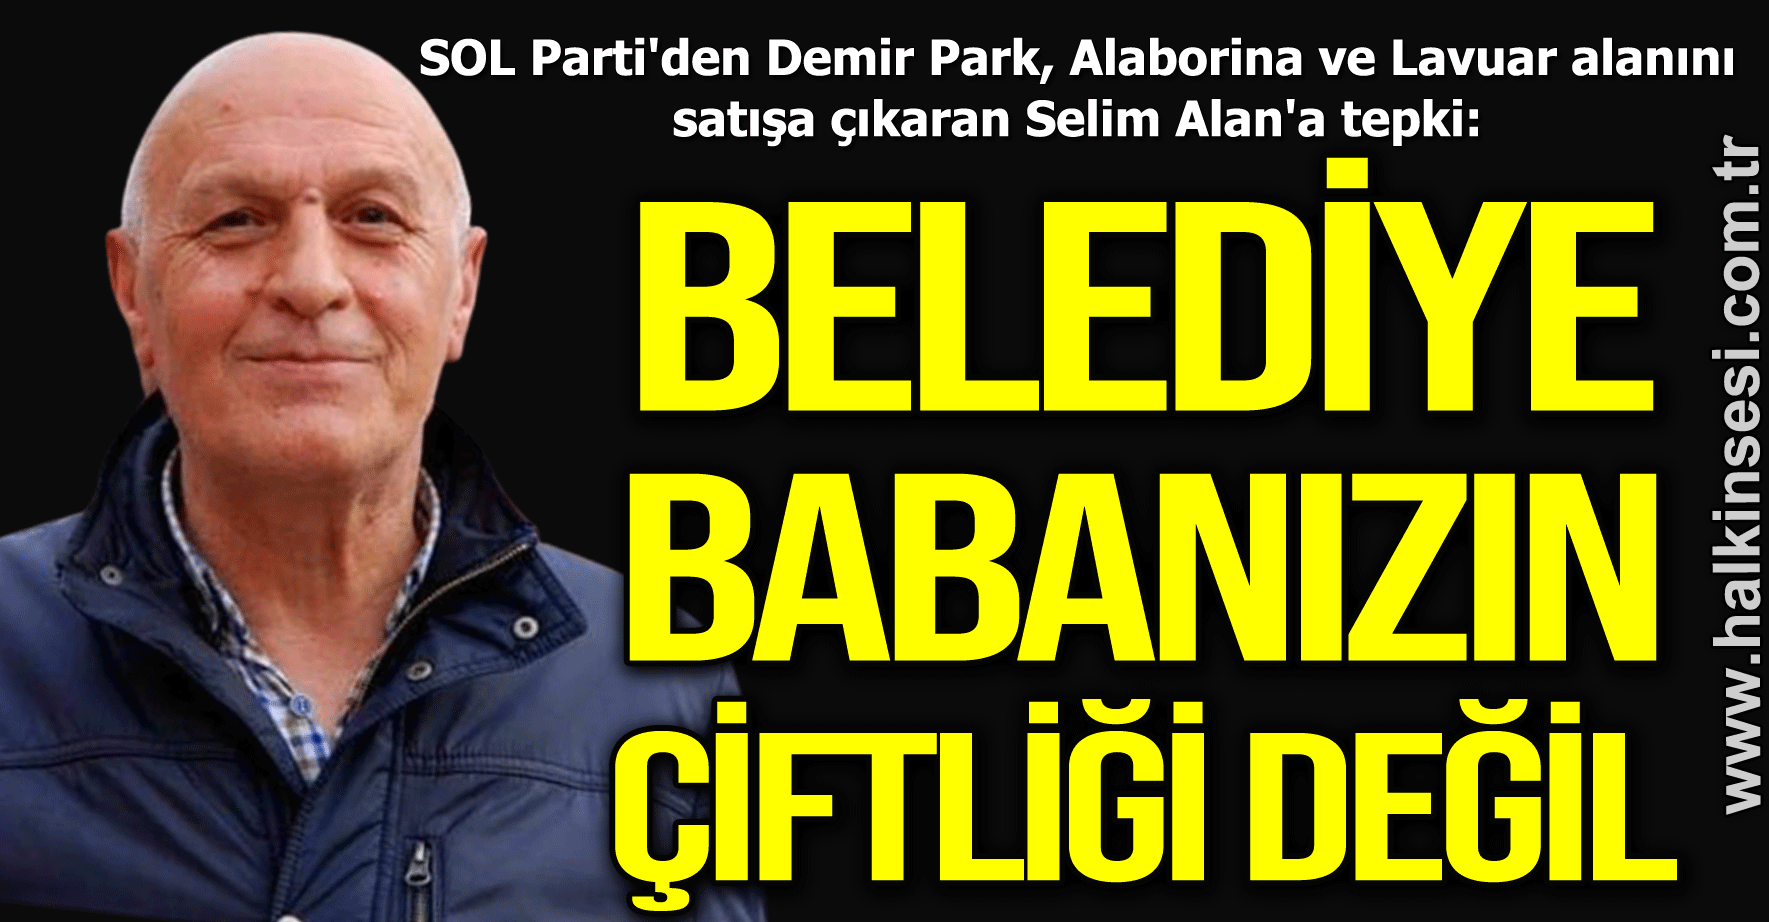 "BELEDİYE BABANIZIN  ÇİFTLİĞİ DEĞİL"